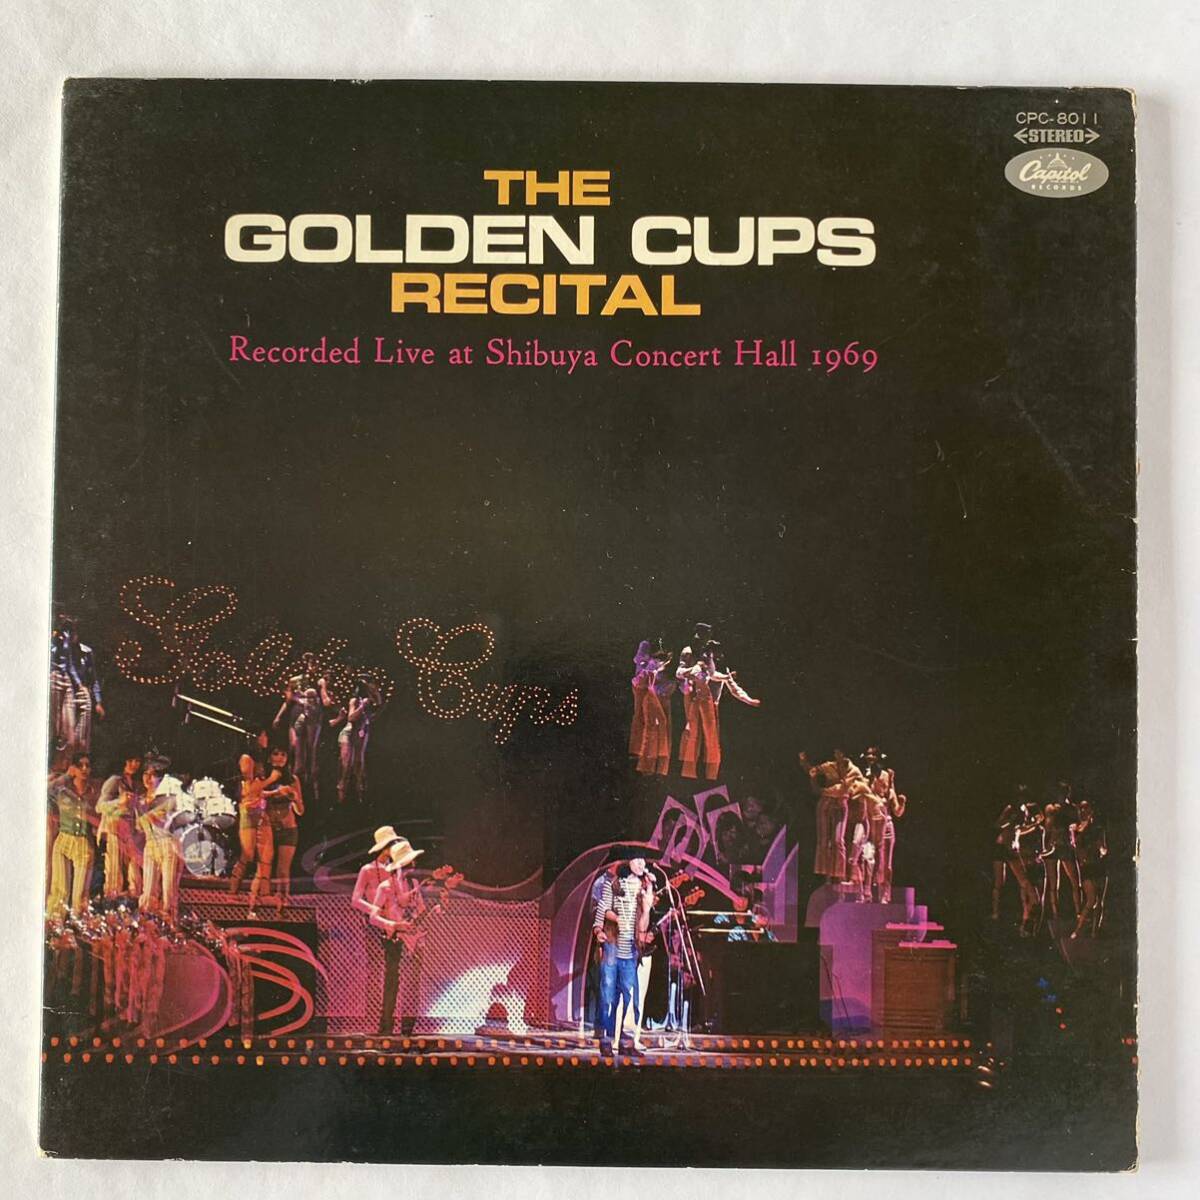 ザ ゴールデン カップス / リサイタル [LP] 【CPC-8011】 【オリジナル盤】 ジャンク GS ニューロックの画像1